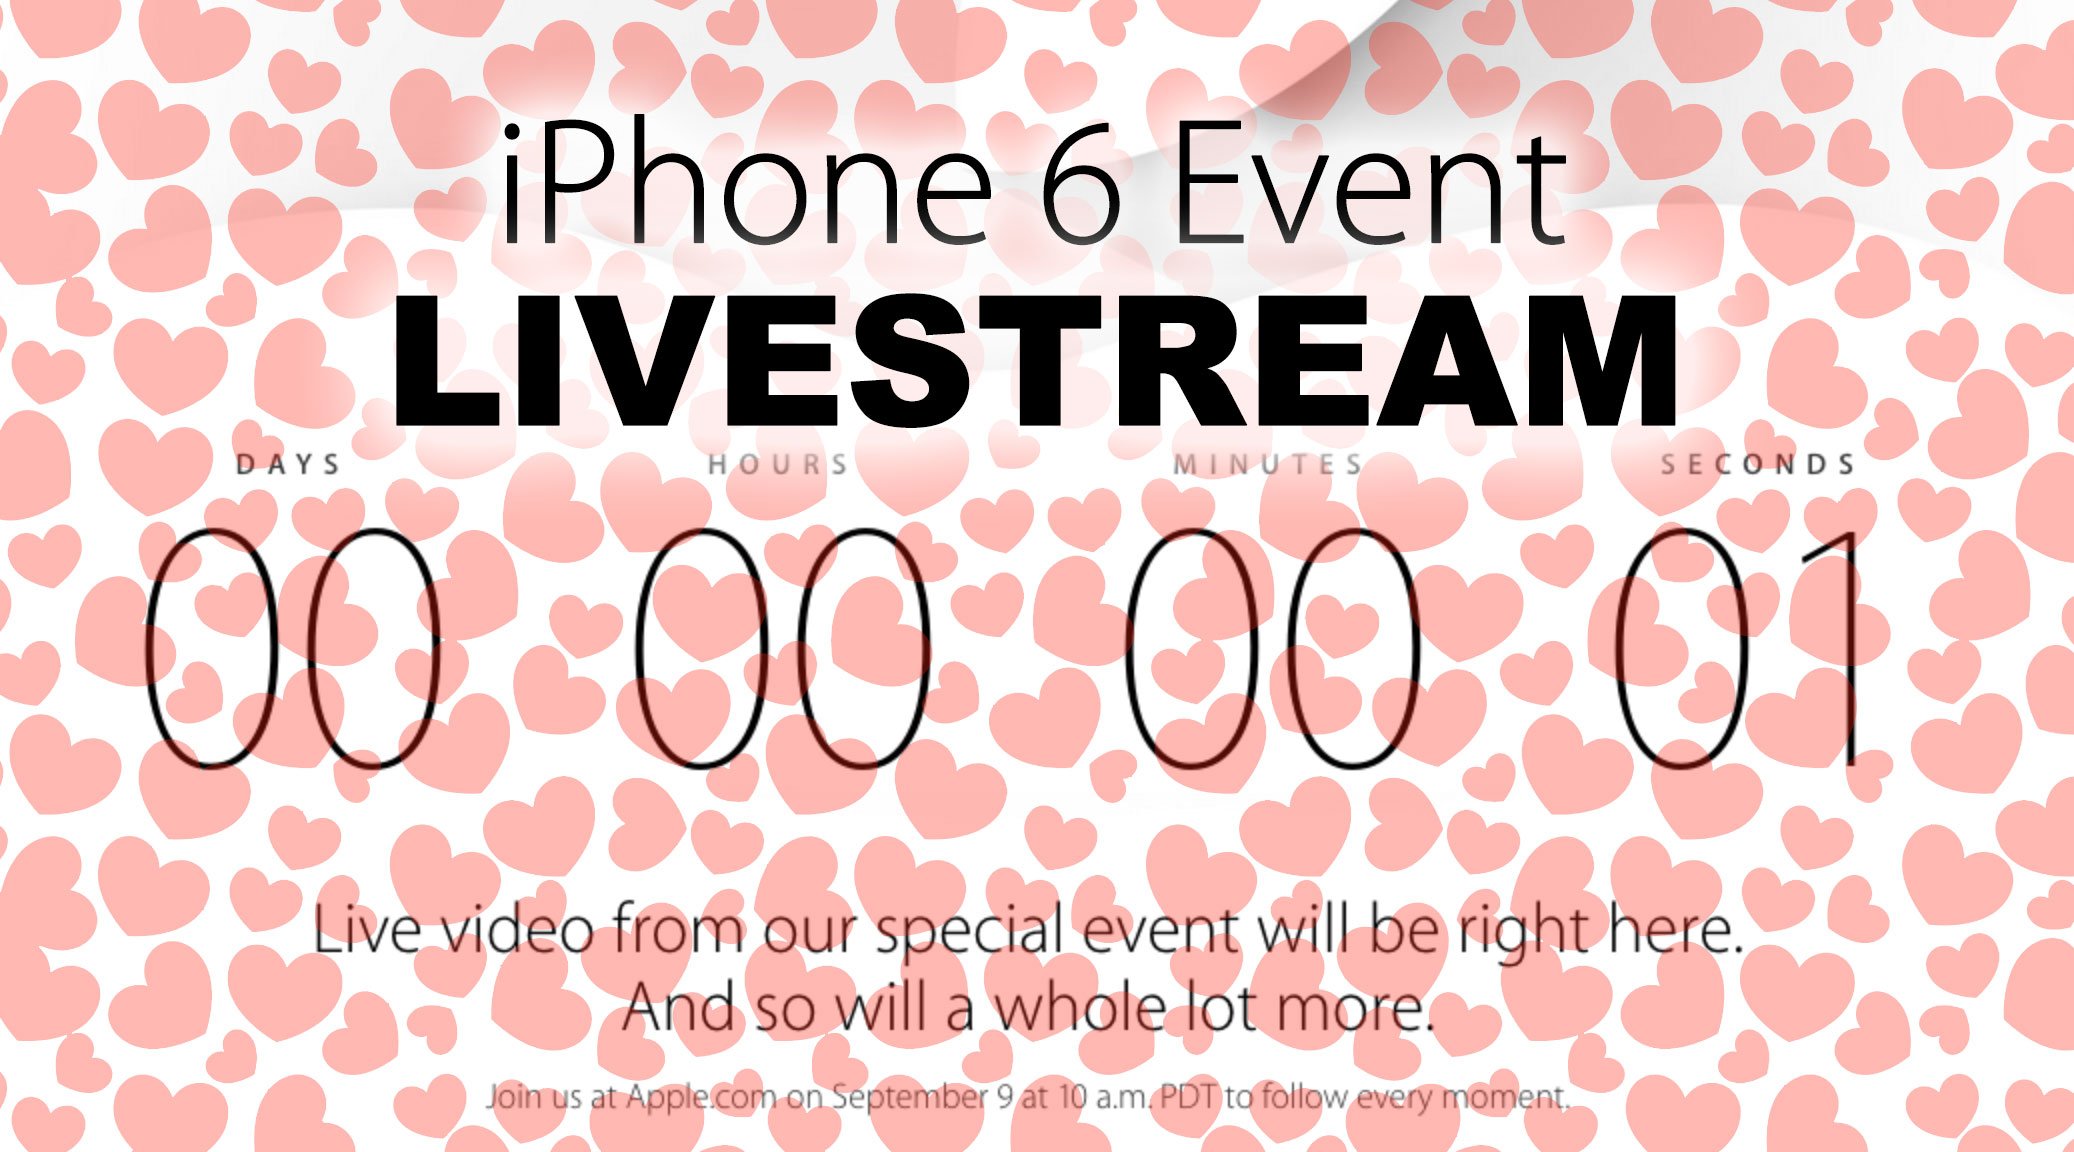 Livestream iPhone 6 Event: Apple kündigt Video Live-Stream an! 9